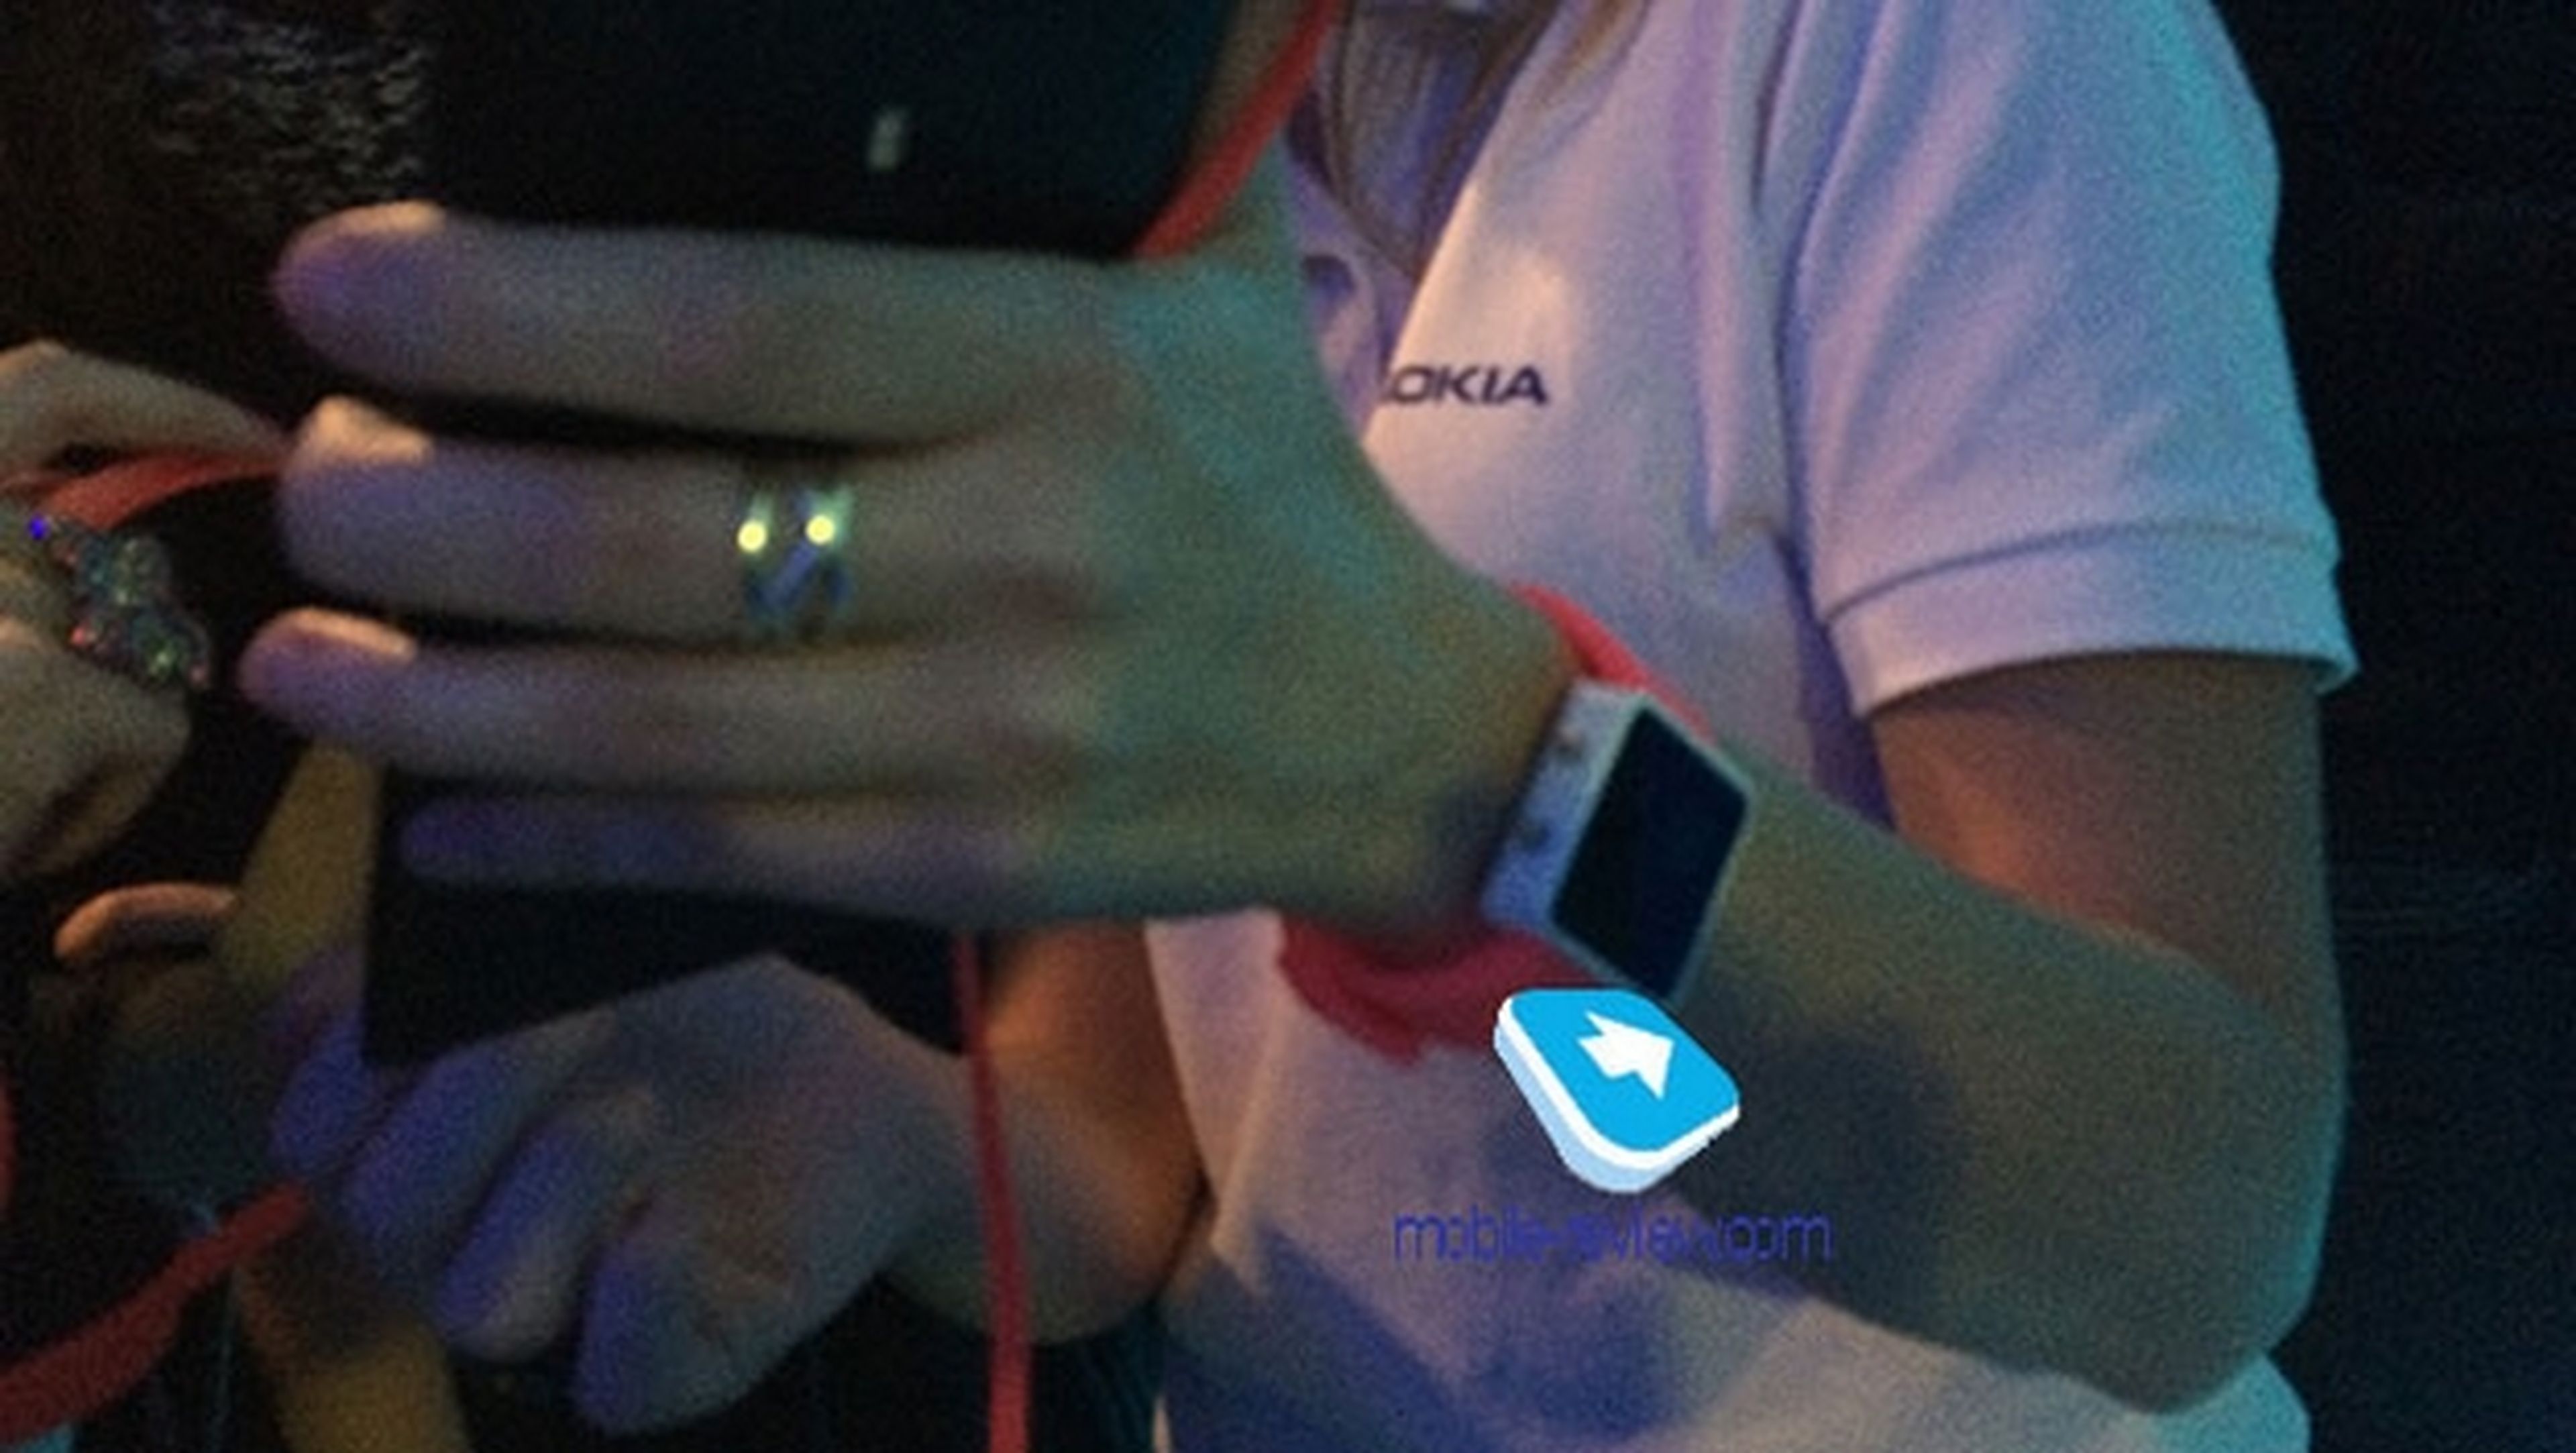 Primera foto filtrada del futuro reloj inteligente de Nokia, llamado Lumia Smartwatch